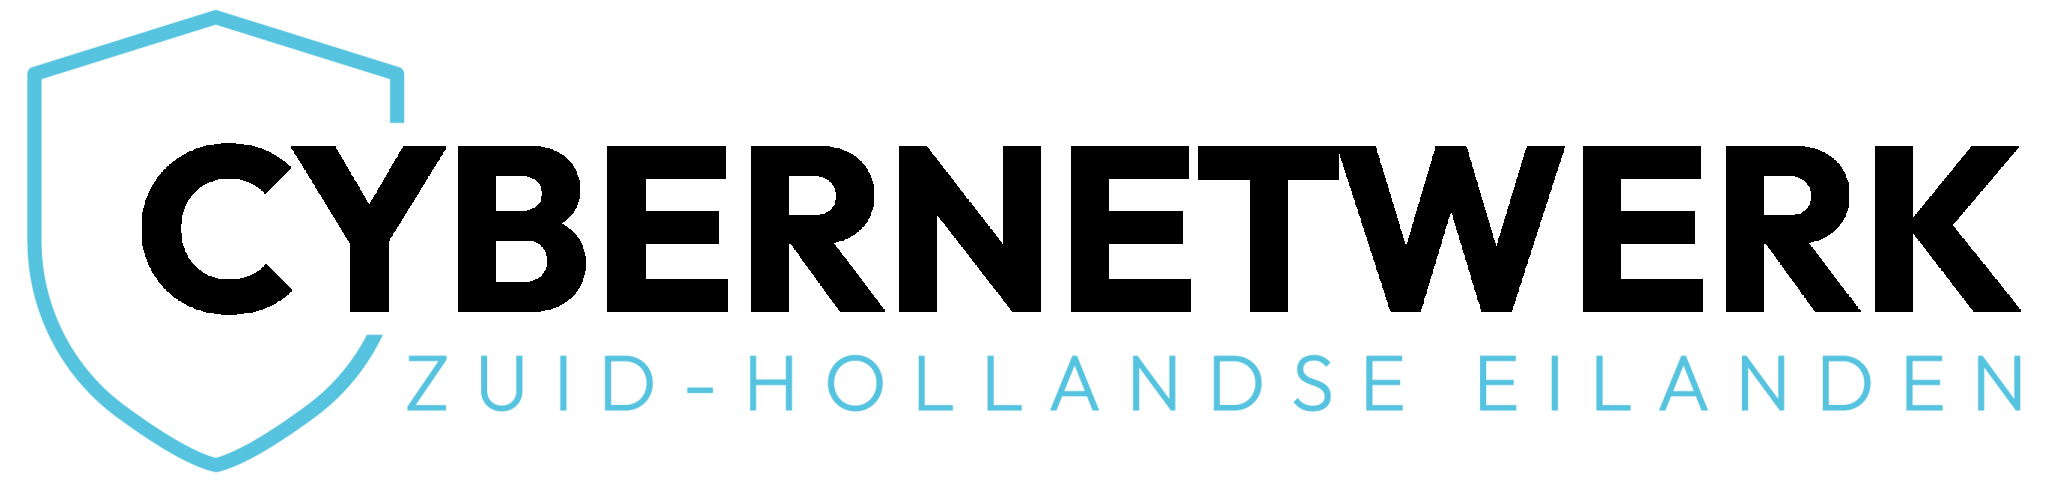 Cybernetwerk Zuid Hollandse Eilanden